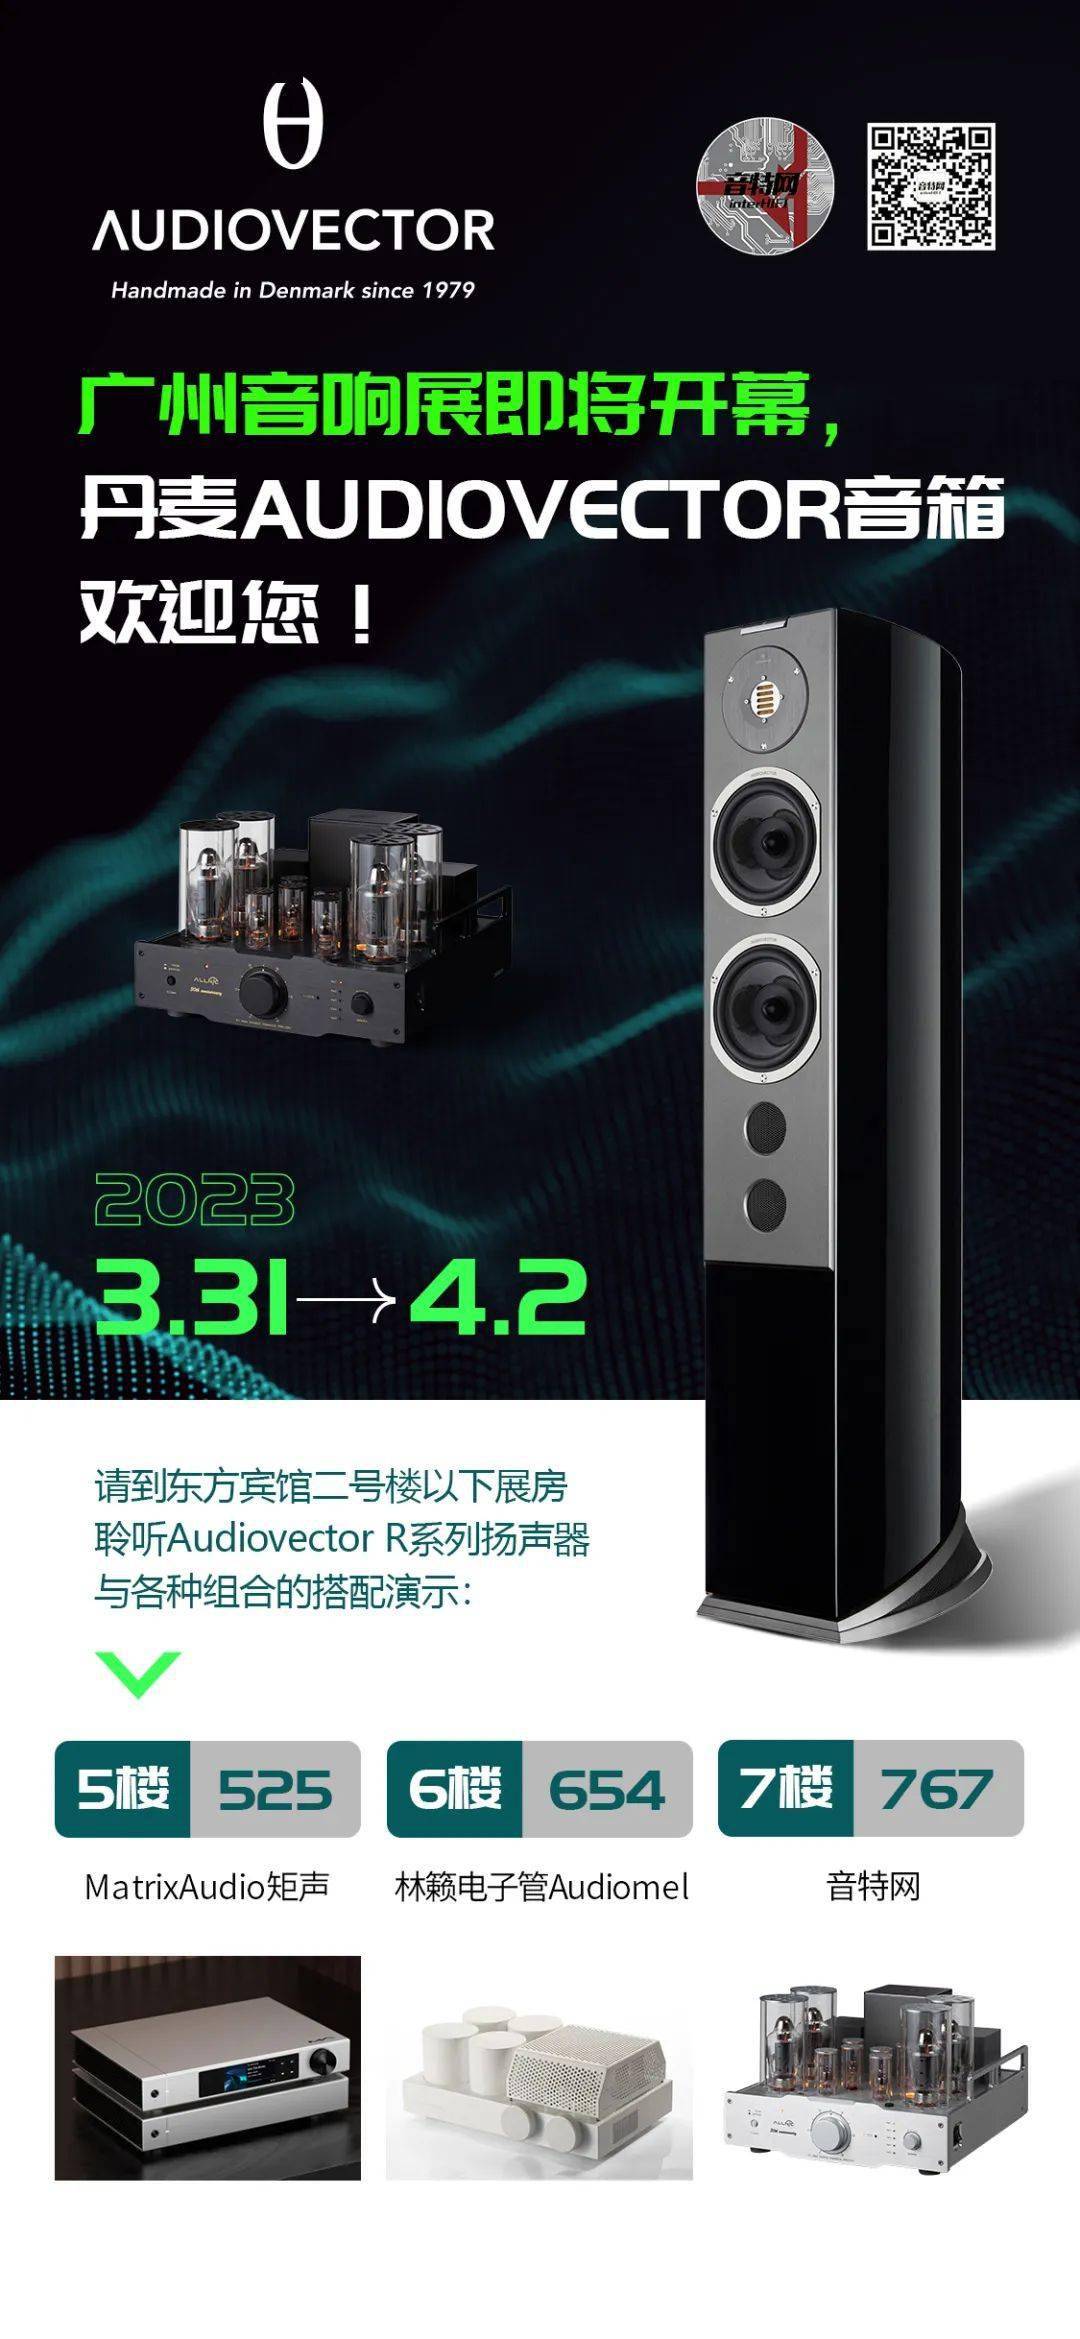 D音任务苹果版:2023广州展预告 | 丹麦AUDIOVECTOR音箱欢迎您！